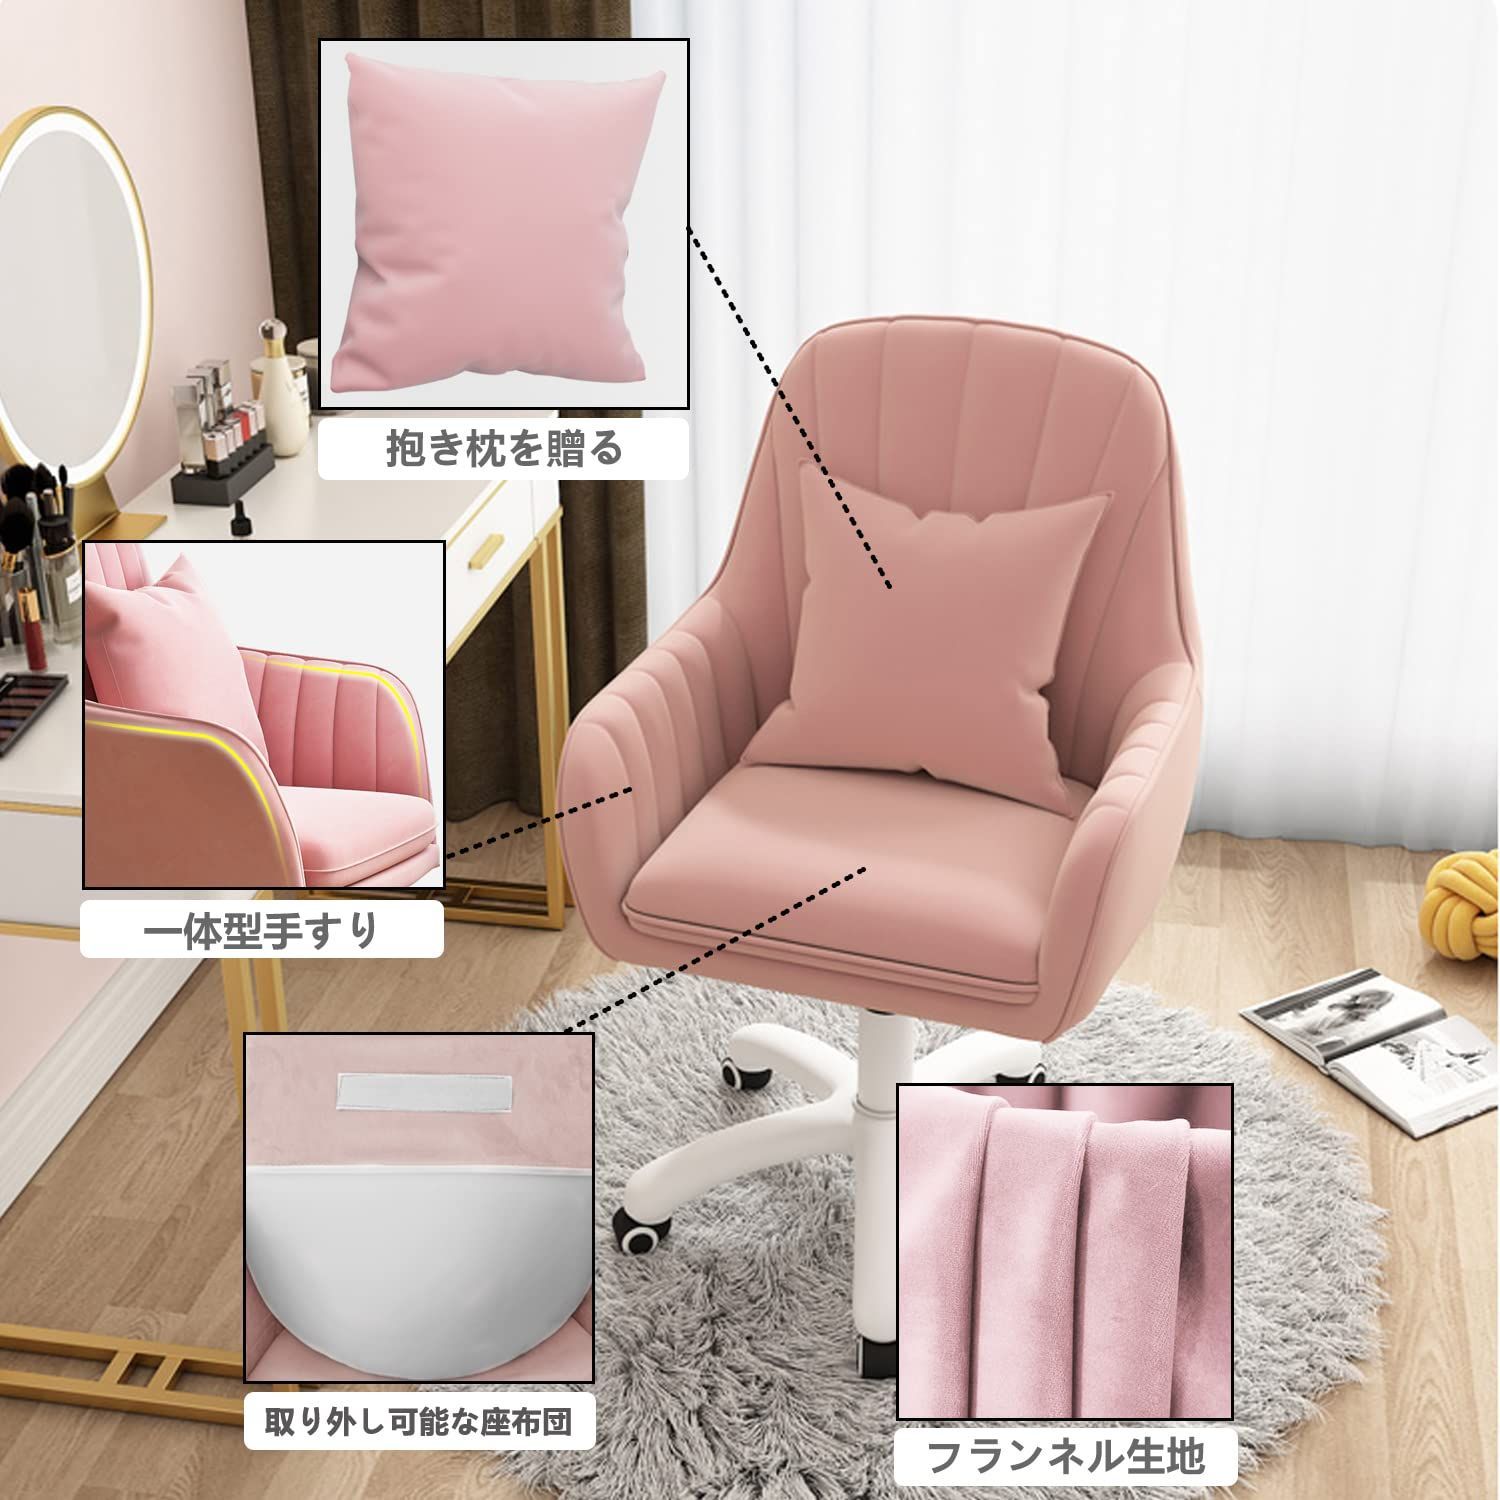 即日発送可能 ピンク 大人気 ベロア ワイドチェアー ソファチェア - 座椅子